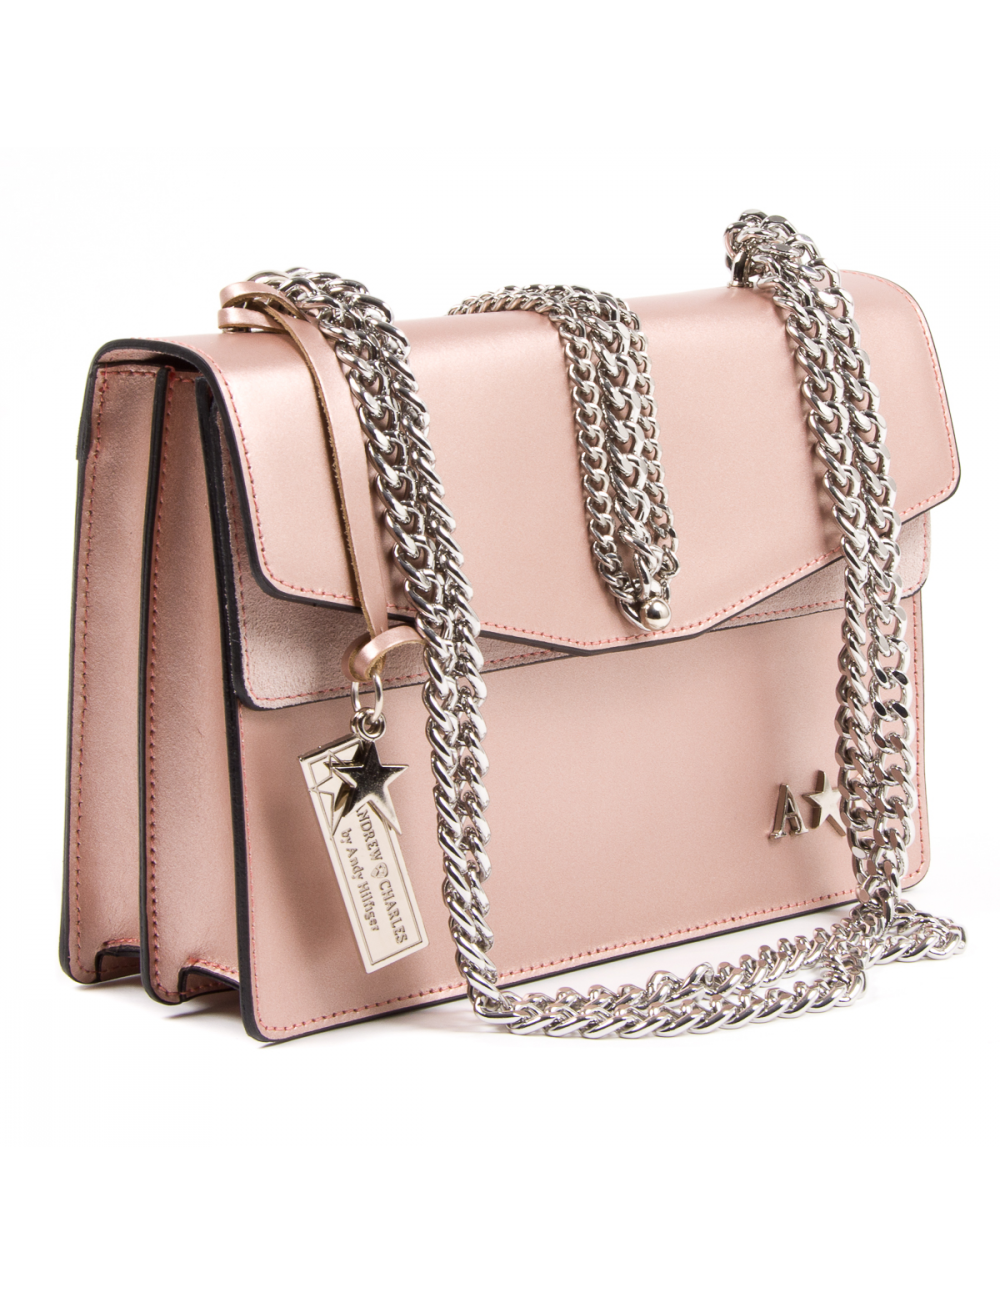 Andrew Charles Womens Handbag Pink RING - YuppyCollections